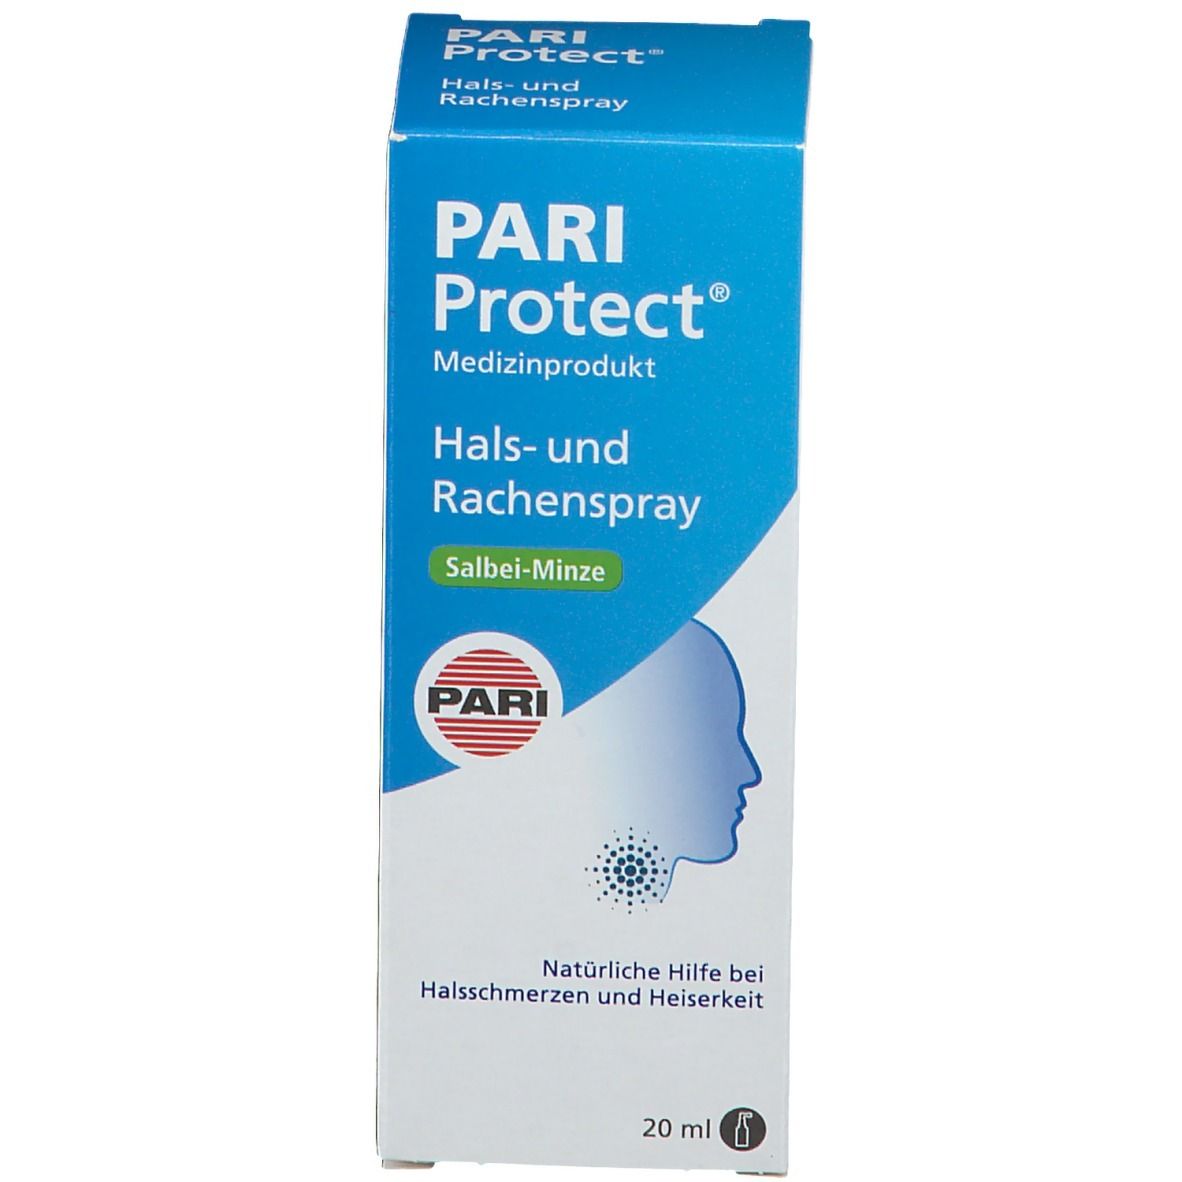 PARI ProTECT® Hals- und Rachenspray